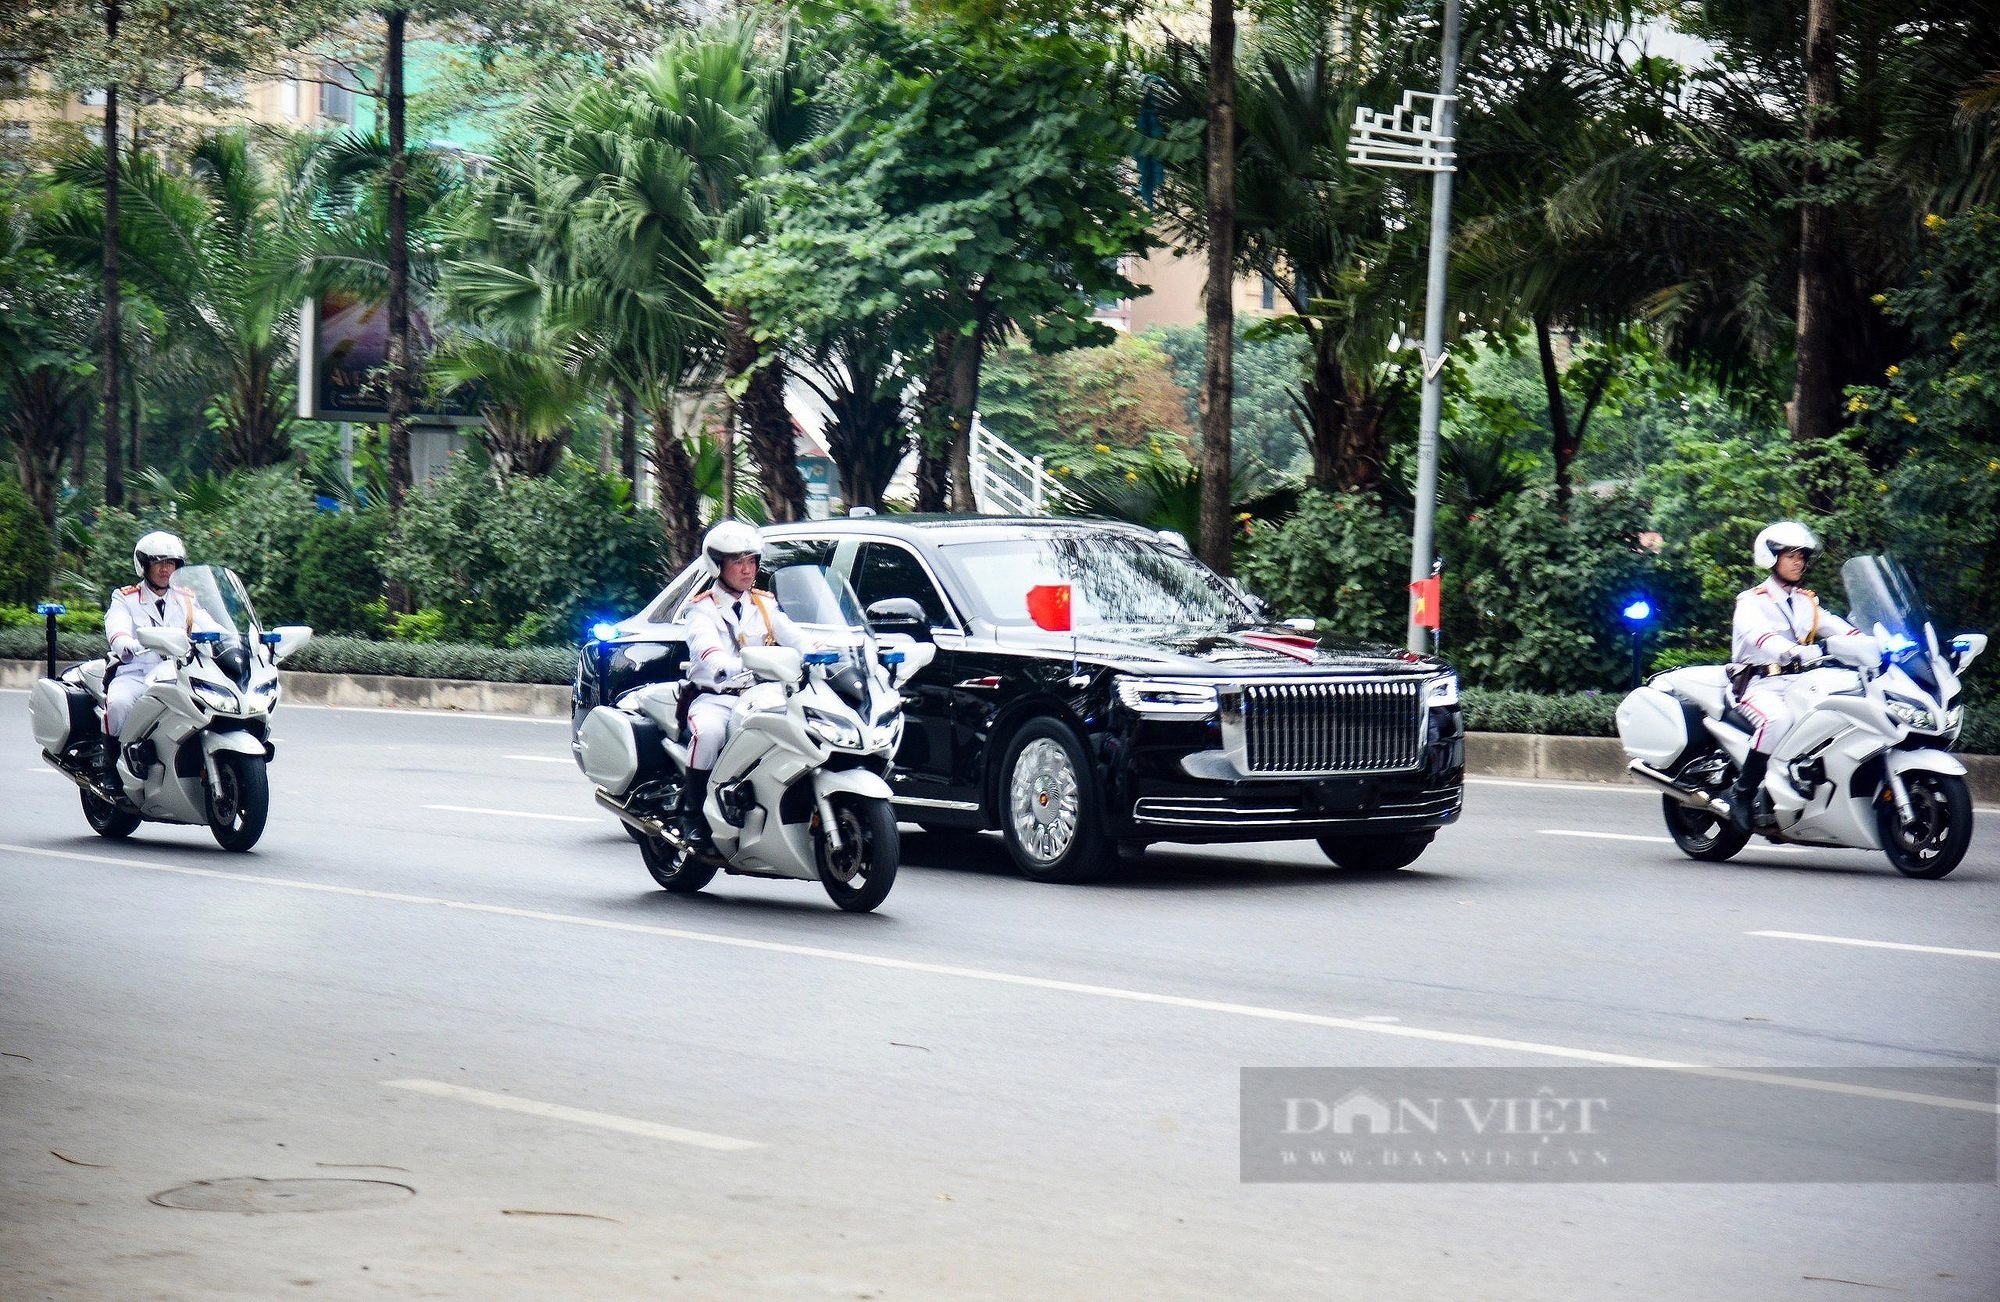 Ngắm siêu xe Hồng Kỳ N701 chở Tổng bí thư, Chủ tịch nước Tập Cận Bình trên đường phố Hà Nội - Ảnh 8.